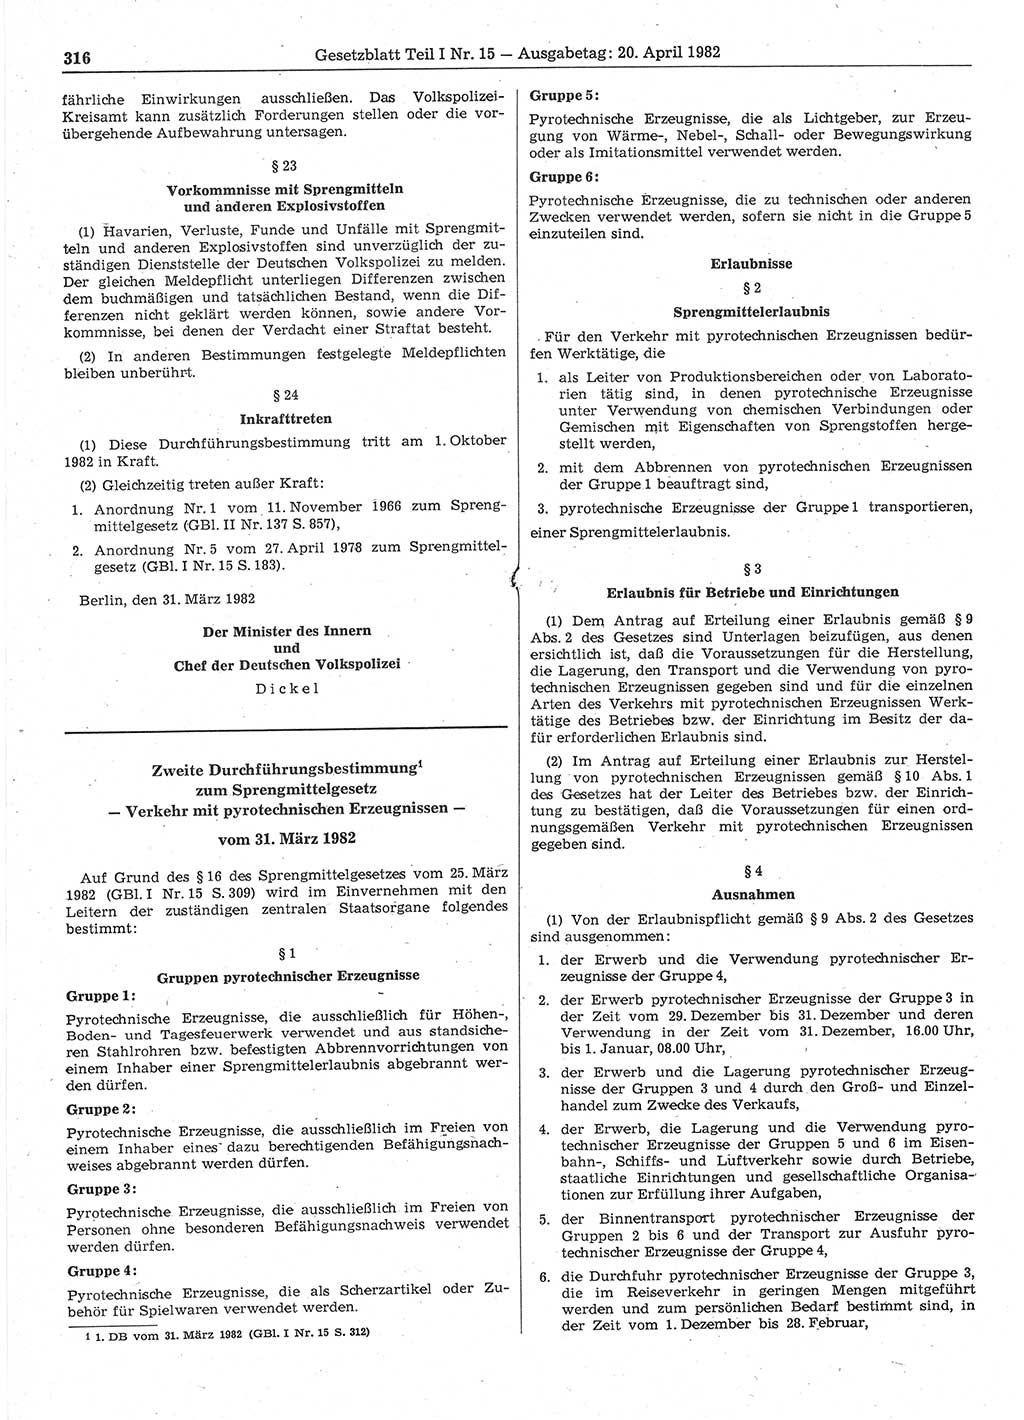 Gesetzblatt (GBl.) der Deutschen Demokratischen Republik (DDR) Teil Ⅰ 1982, Seite 316 (GBl. DDR Ⅰ 1982, S. 316)